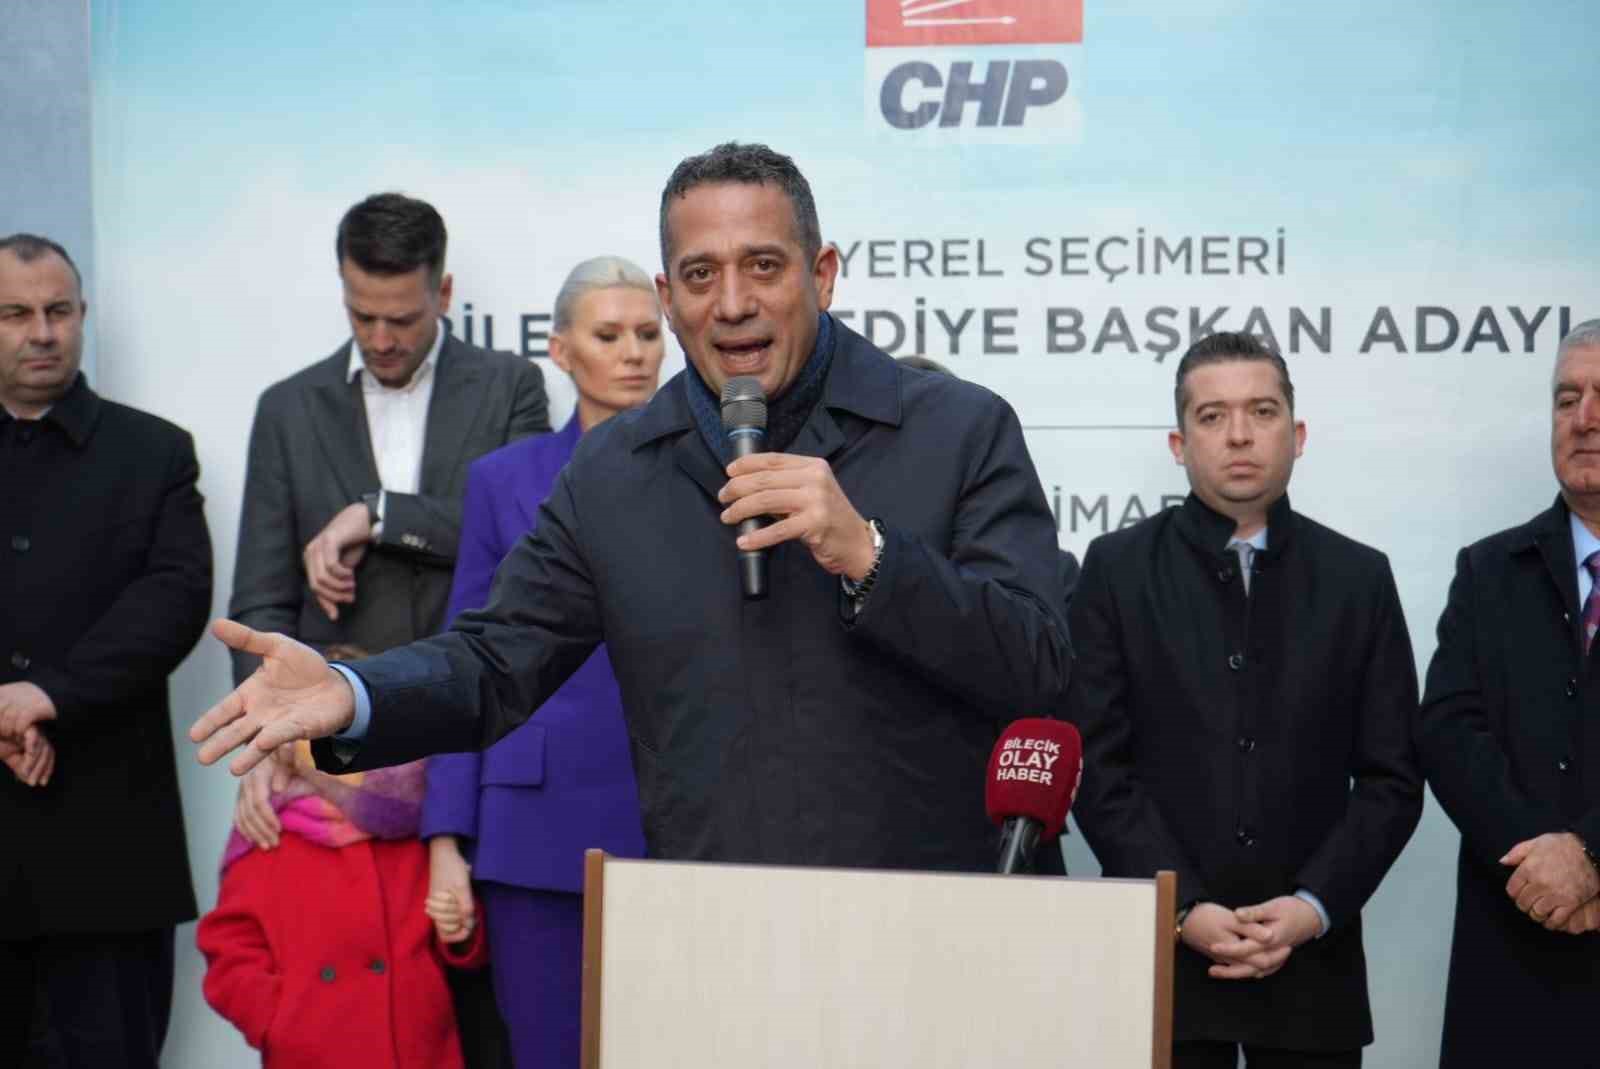 CHP Grup Başkanvekili Ali Mahir Başarır’ın PM toplantısında yaşananları anlatması üzerine detaylar ortaya çıktı.